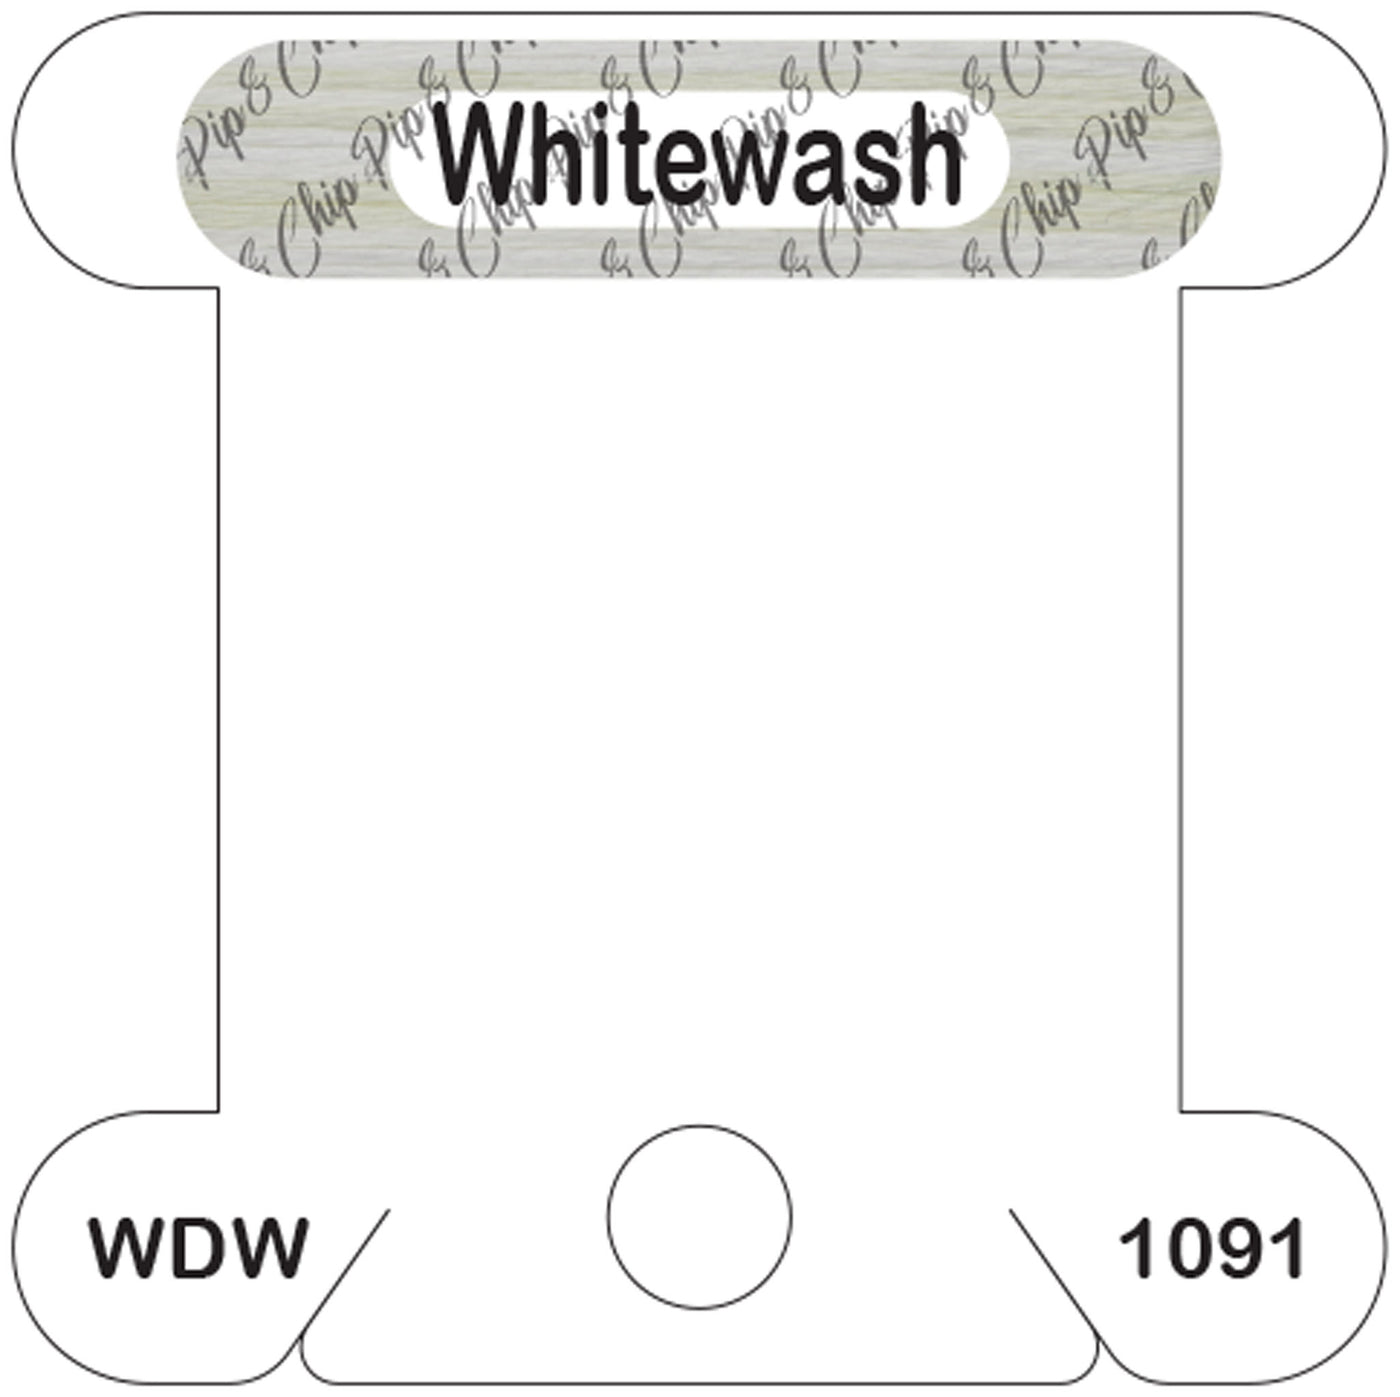 WDW Whitewash acrylic bobbin